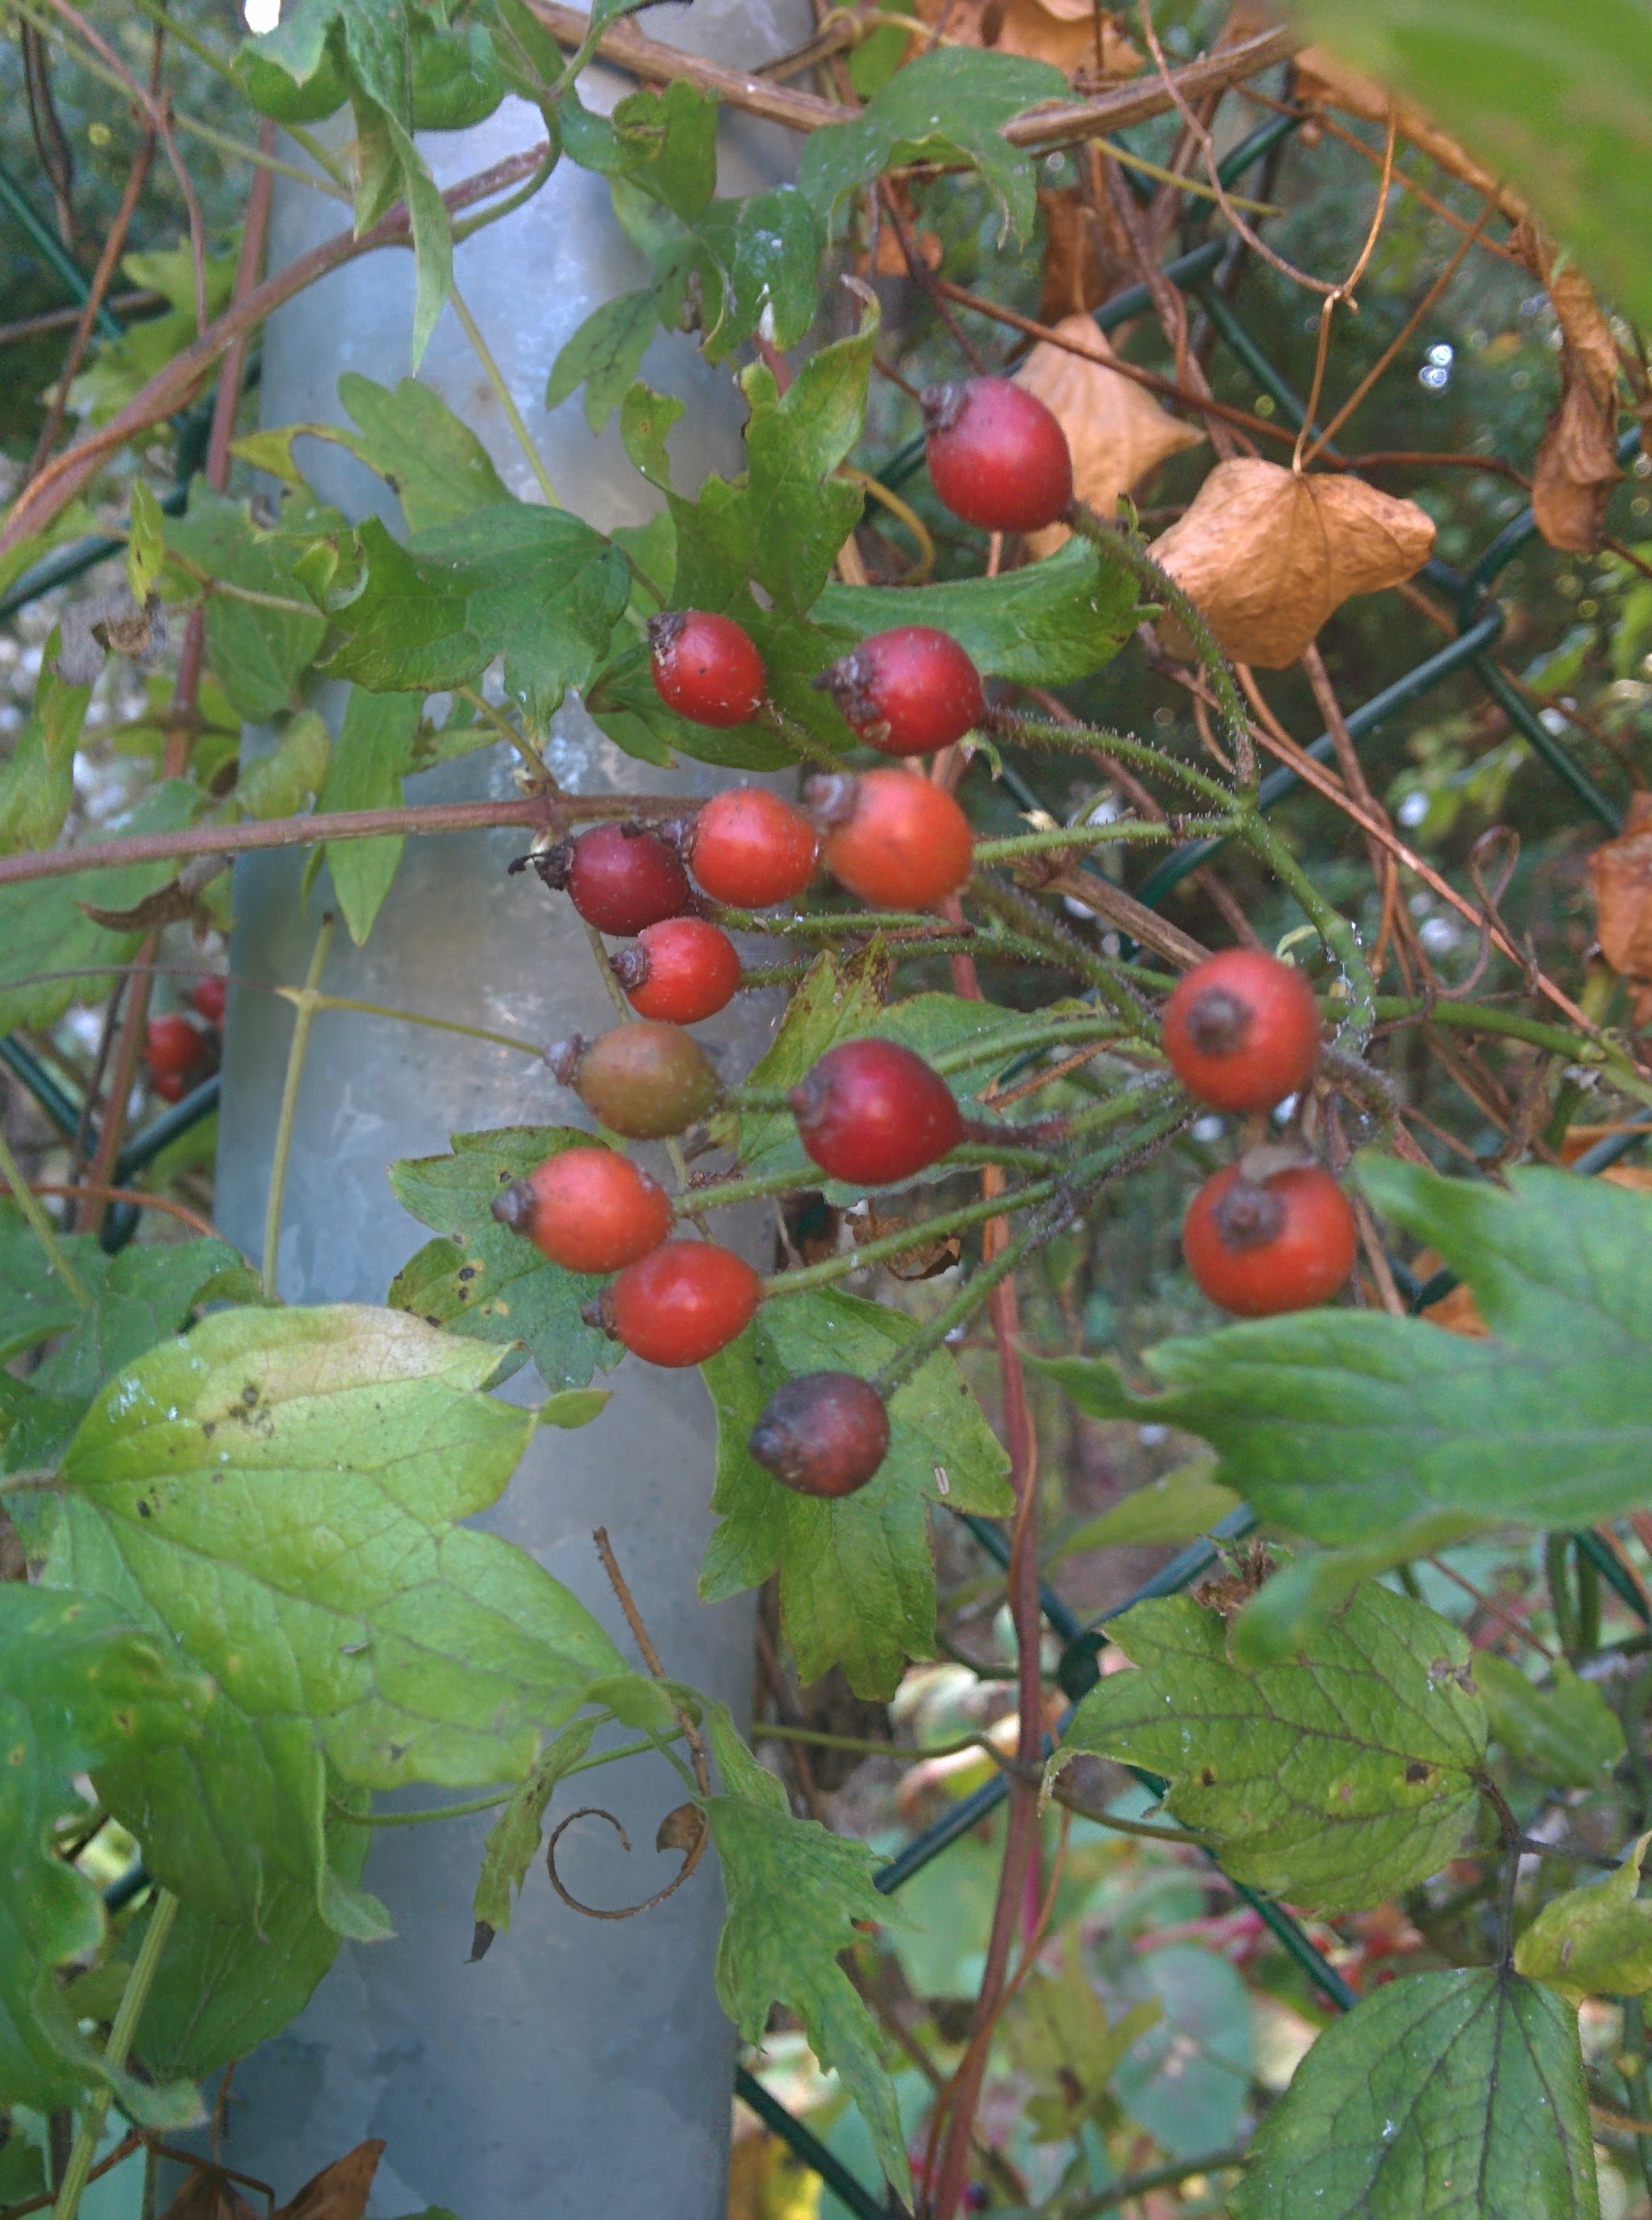 IMG_20151014_125129.jpg 빨간색 찔레나무 열매